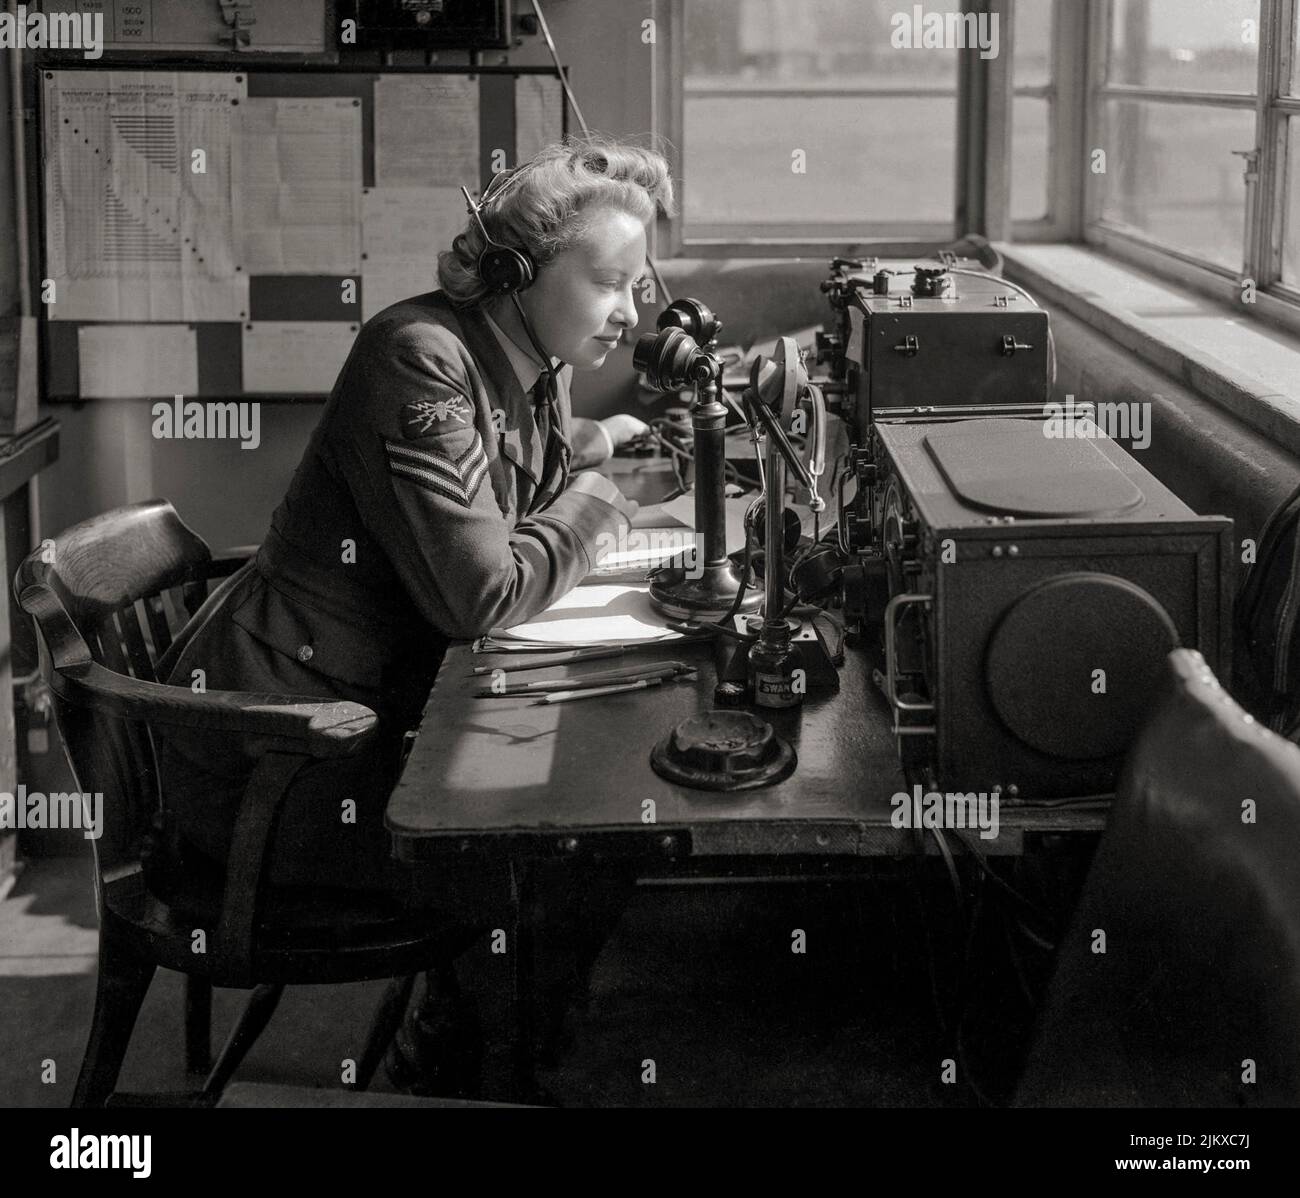 Ein WAAF-Funktelefonbetreiber, der vom Wachbüro einer Bomber Command Station aus mit dem Flugzeug kommuniziert. Die WAAF wurde 1939 gegründet, als die Regierung beschloss, dass ein separater Frauenflugdienst notwendig war. Die WAAF war weder eine unabhängige Organisation noch war sie vollständig in die RAF integriert. Vielmehr war sie mit der RAF verknüpft, so dass, wann immer möglich, das RAF-Personal durch Frauen ersetzt werden konnte. Stockfoto